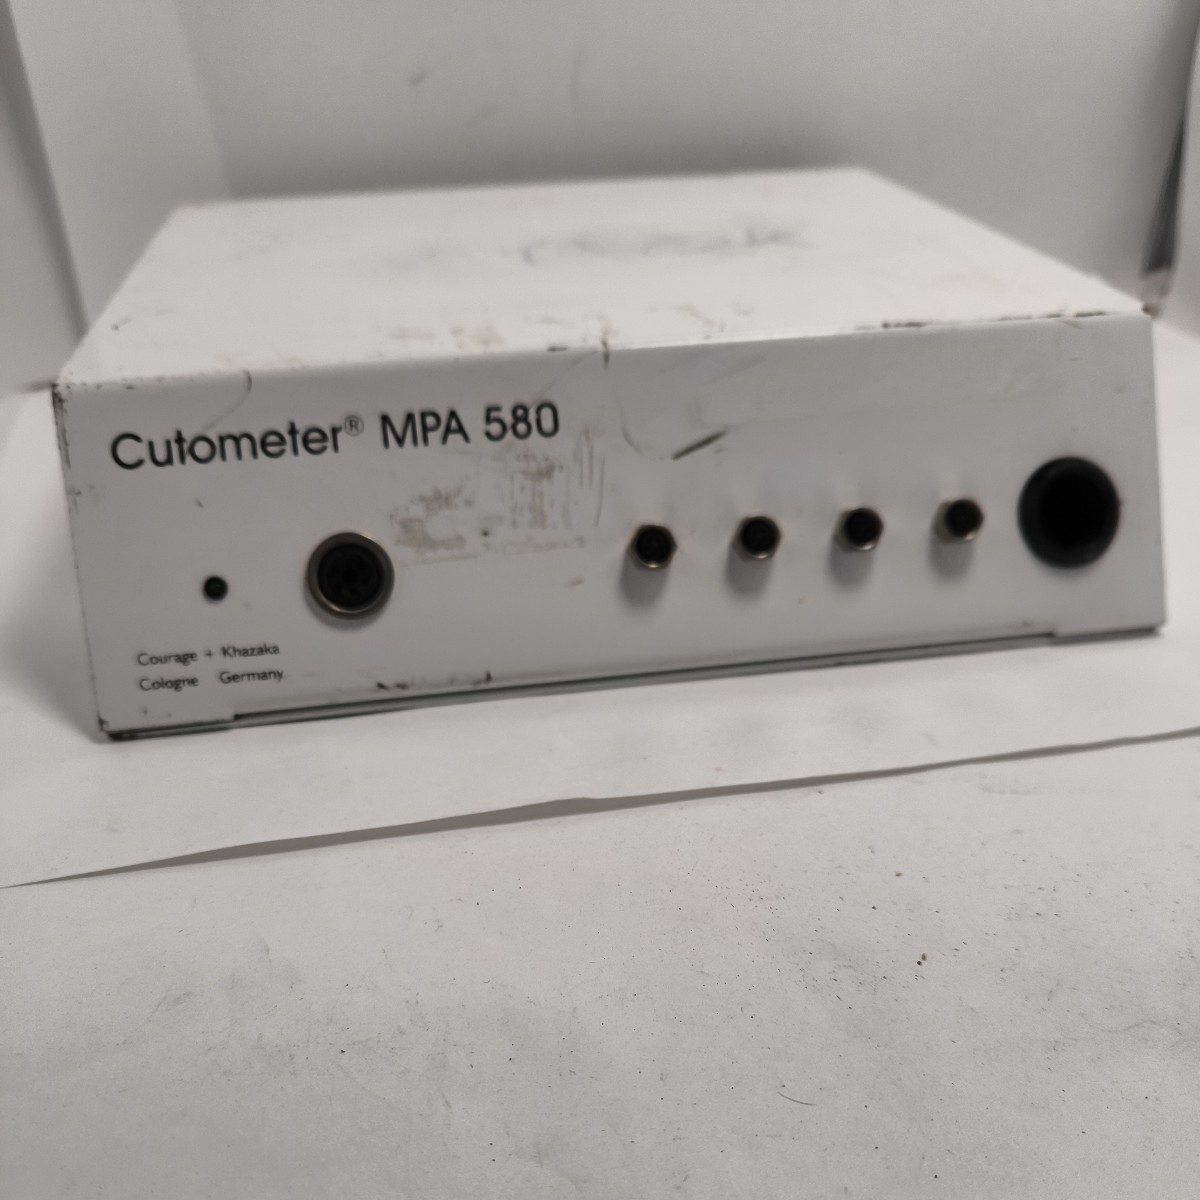 [2FX26]Cutometer MPA 580 integral кожа ... измерительный прибор? текущее состояние корпус только Junk лот 